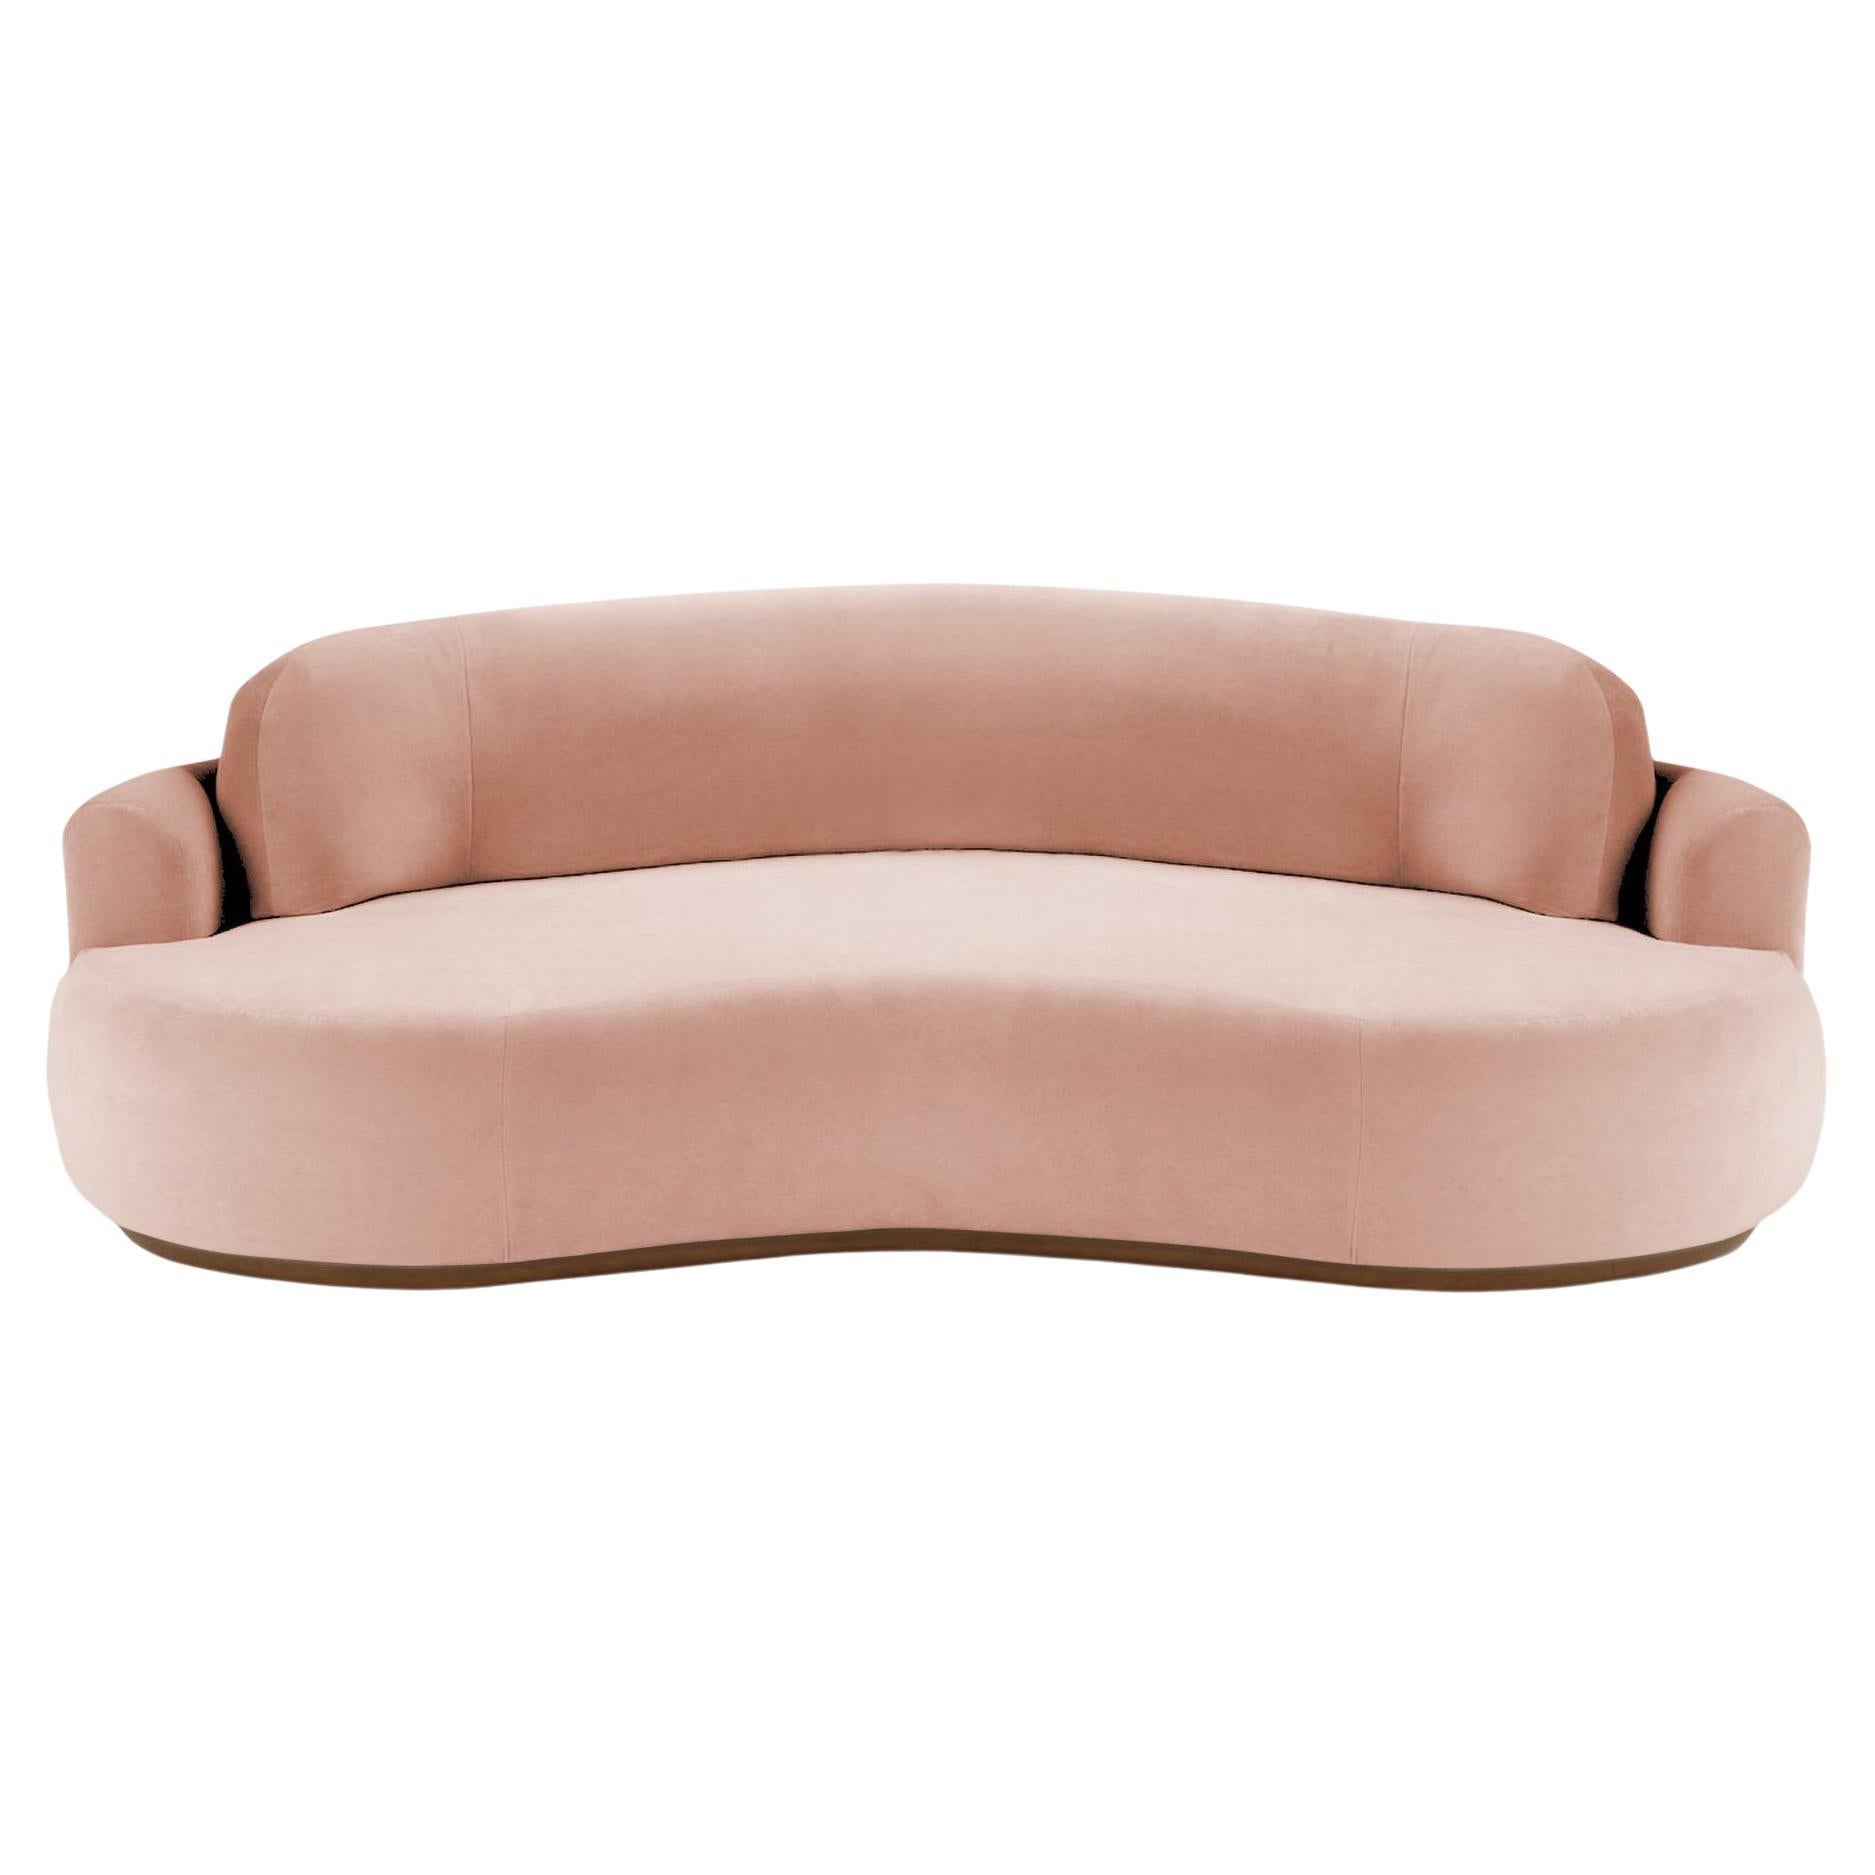 Naked Curved Sofa, Medium with Beech Ash-056-1 and Vigo Blossom